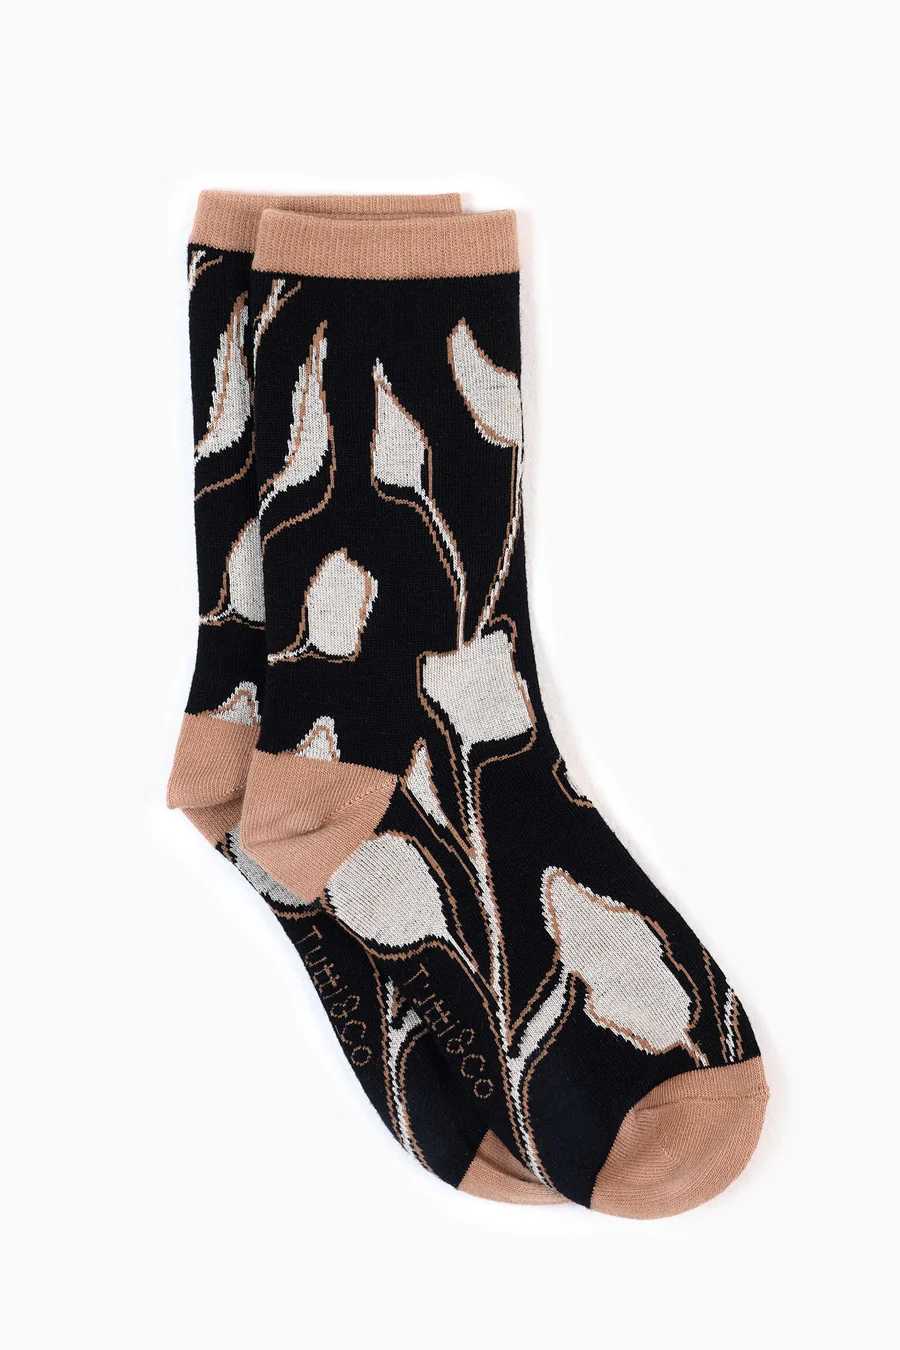 Tutti & Co Wildflower Socks